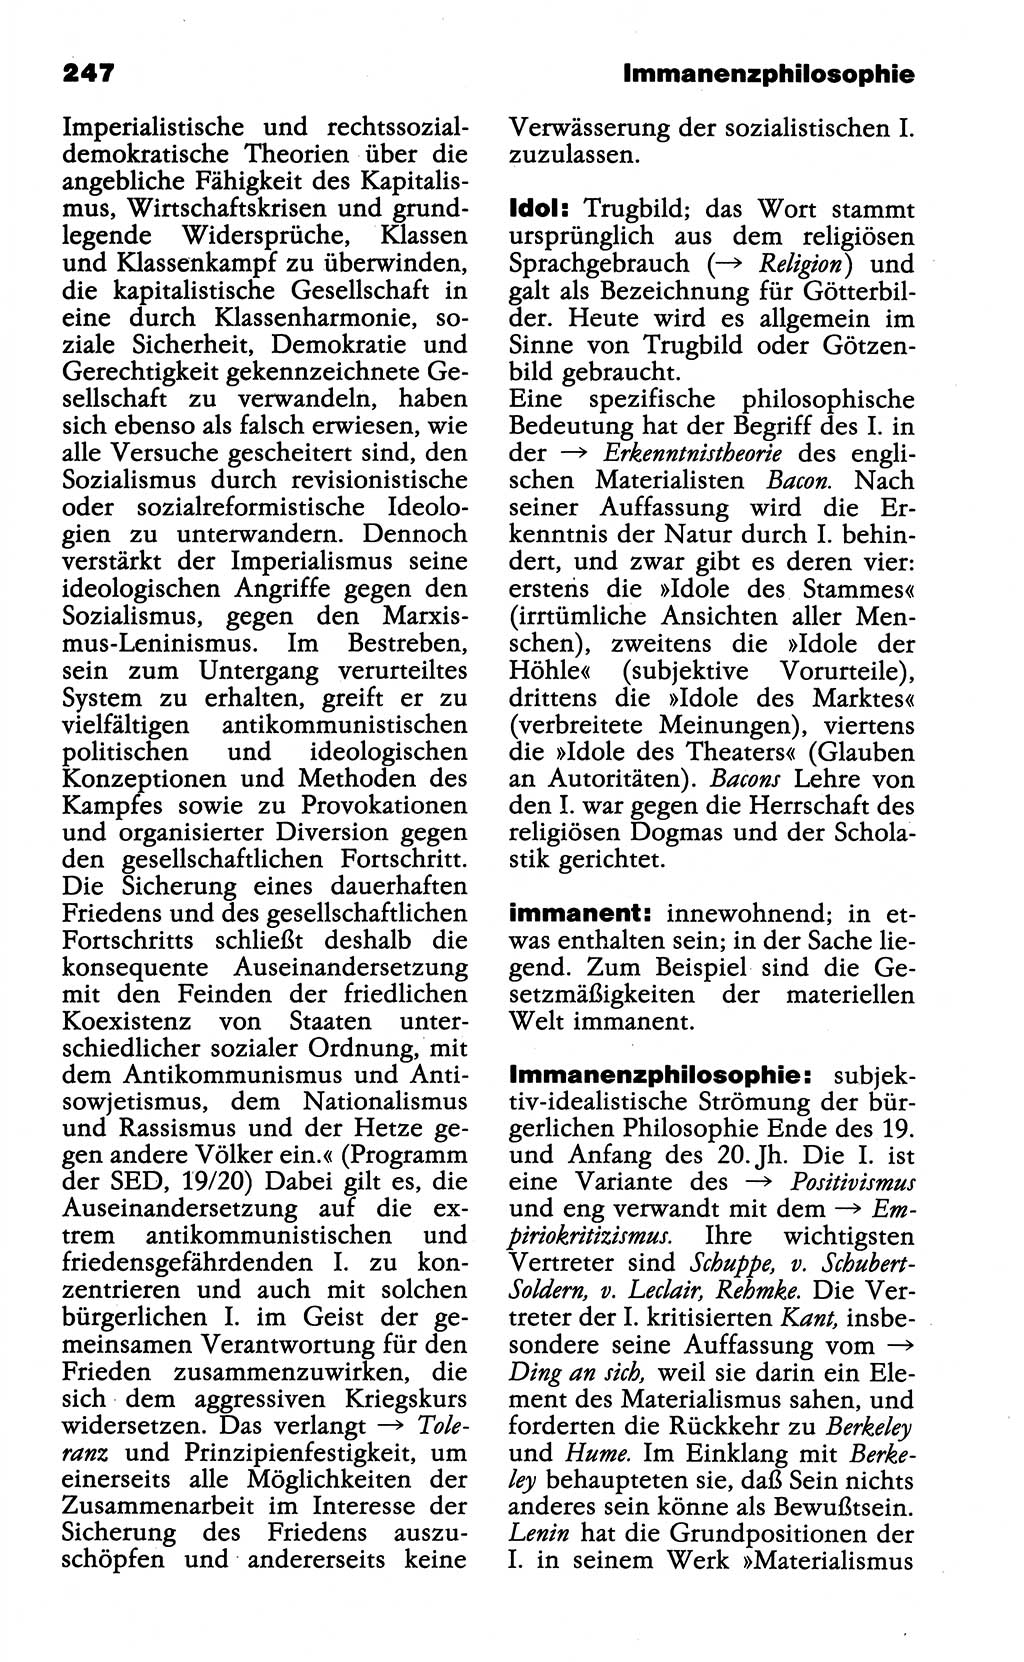 Wörterbuch der marxistisch-leninistischen Philosophie [Deutsche Demokratische Republik (DDR)] 1985, Seite 247 (Wb. ML Phil. DDR 1985, S. 247)